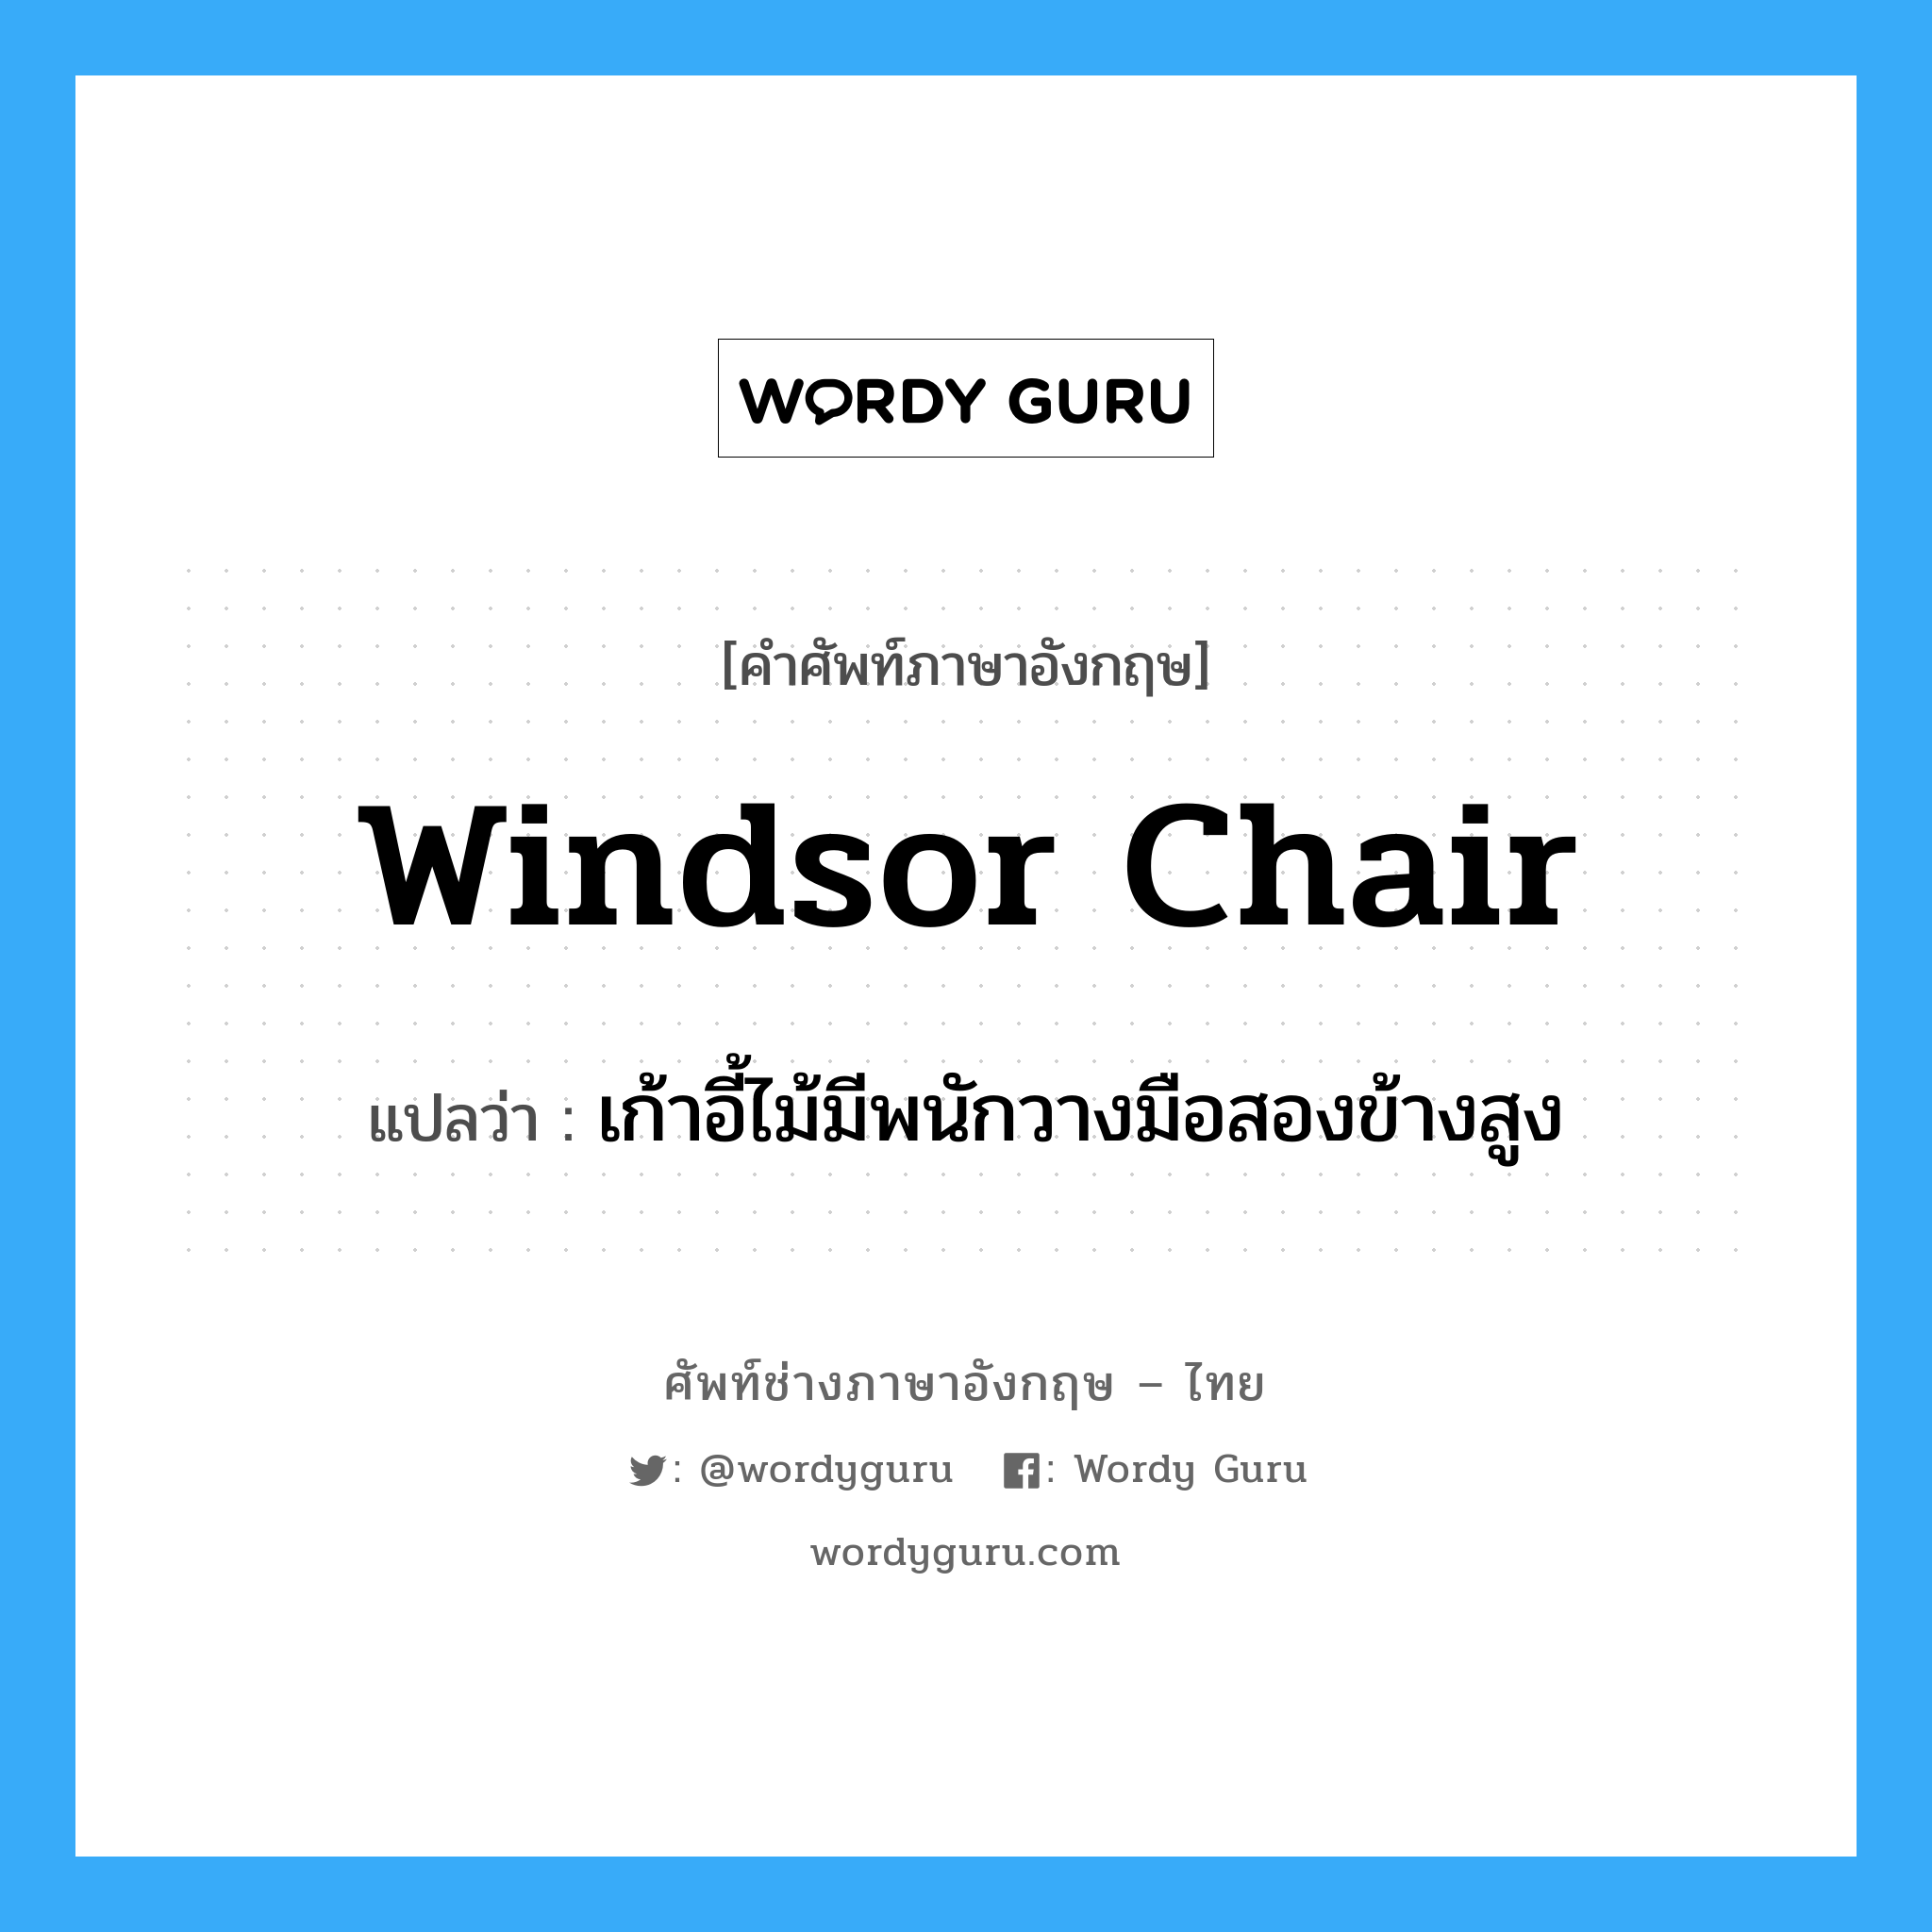 Windsor chair แปลว่า?, คำศัพท์ช่างภาษาอังกฤษ - ไทย Windsor chair คำศัพท์ภาษาอังกฤษ Windsor chair แปลว่า เก้าอี้ไม้มีพนักวางมือสองข้างสูง